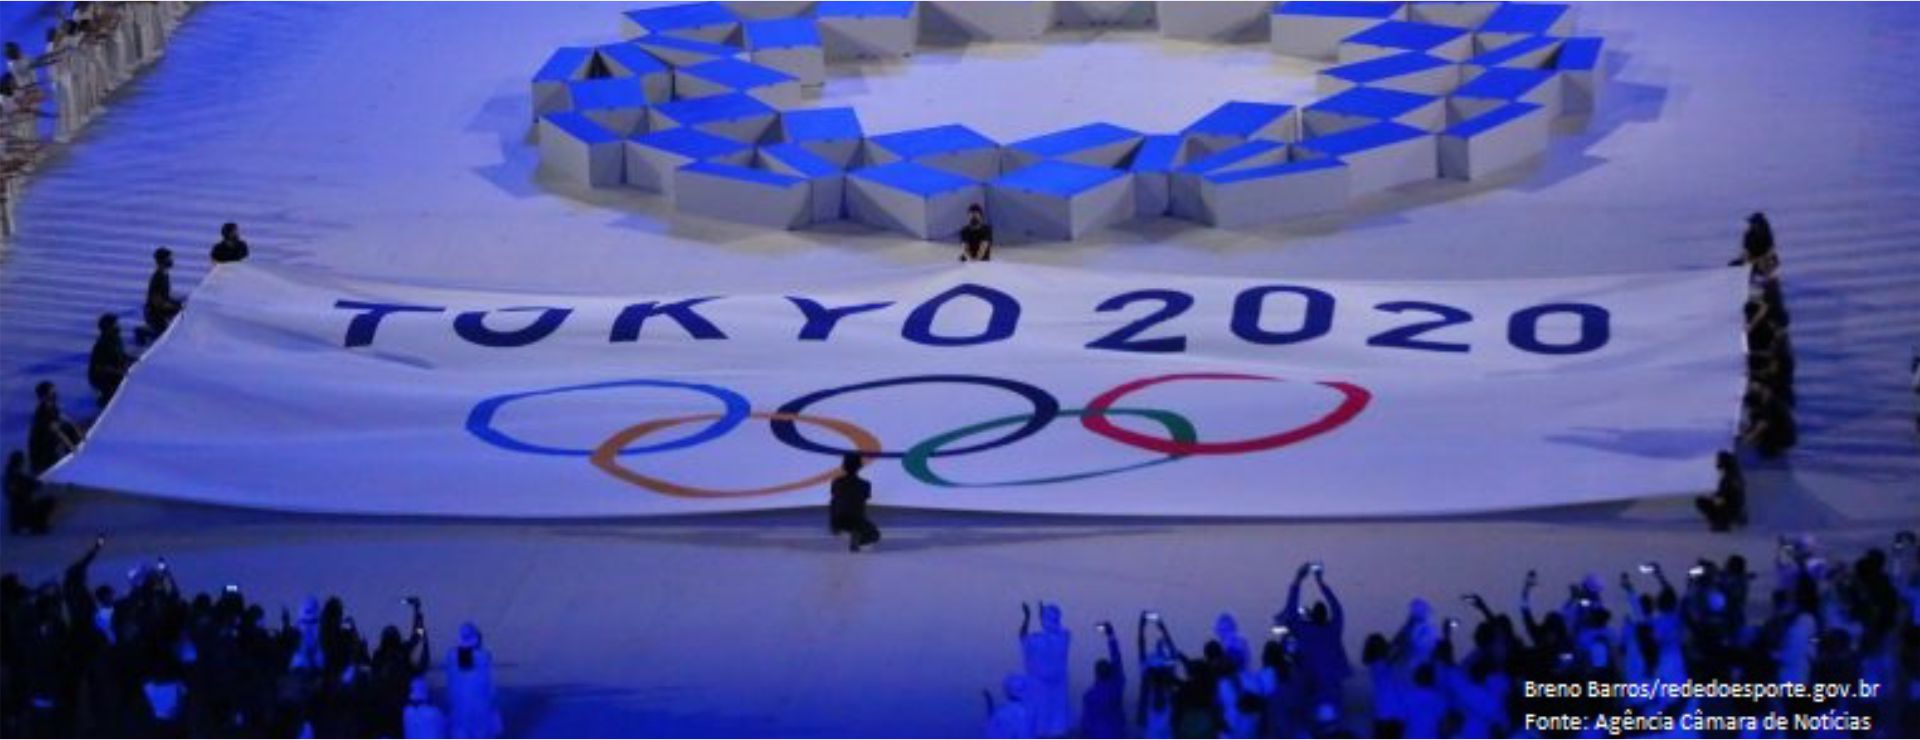 Audiência Pública realizada pela Comissão do Esporte da Câmara dos Deputados trata sobre o balanço dos Jogos Olímpicos de Tóquio 2020